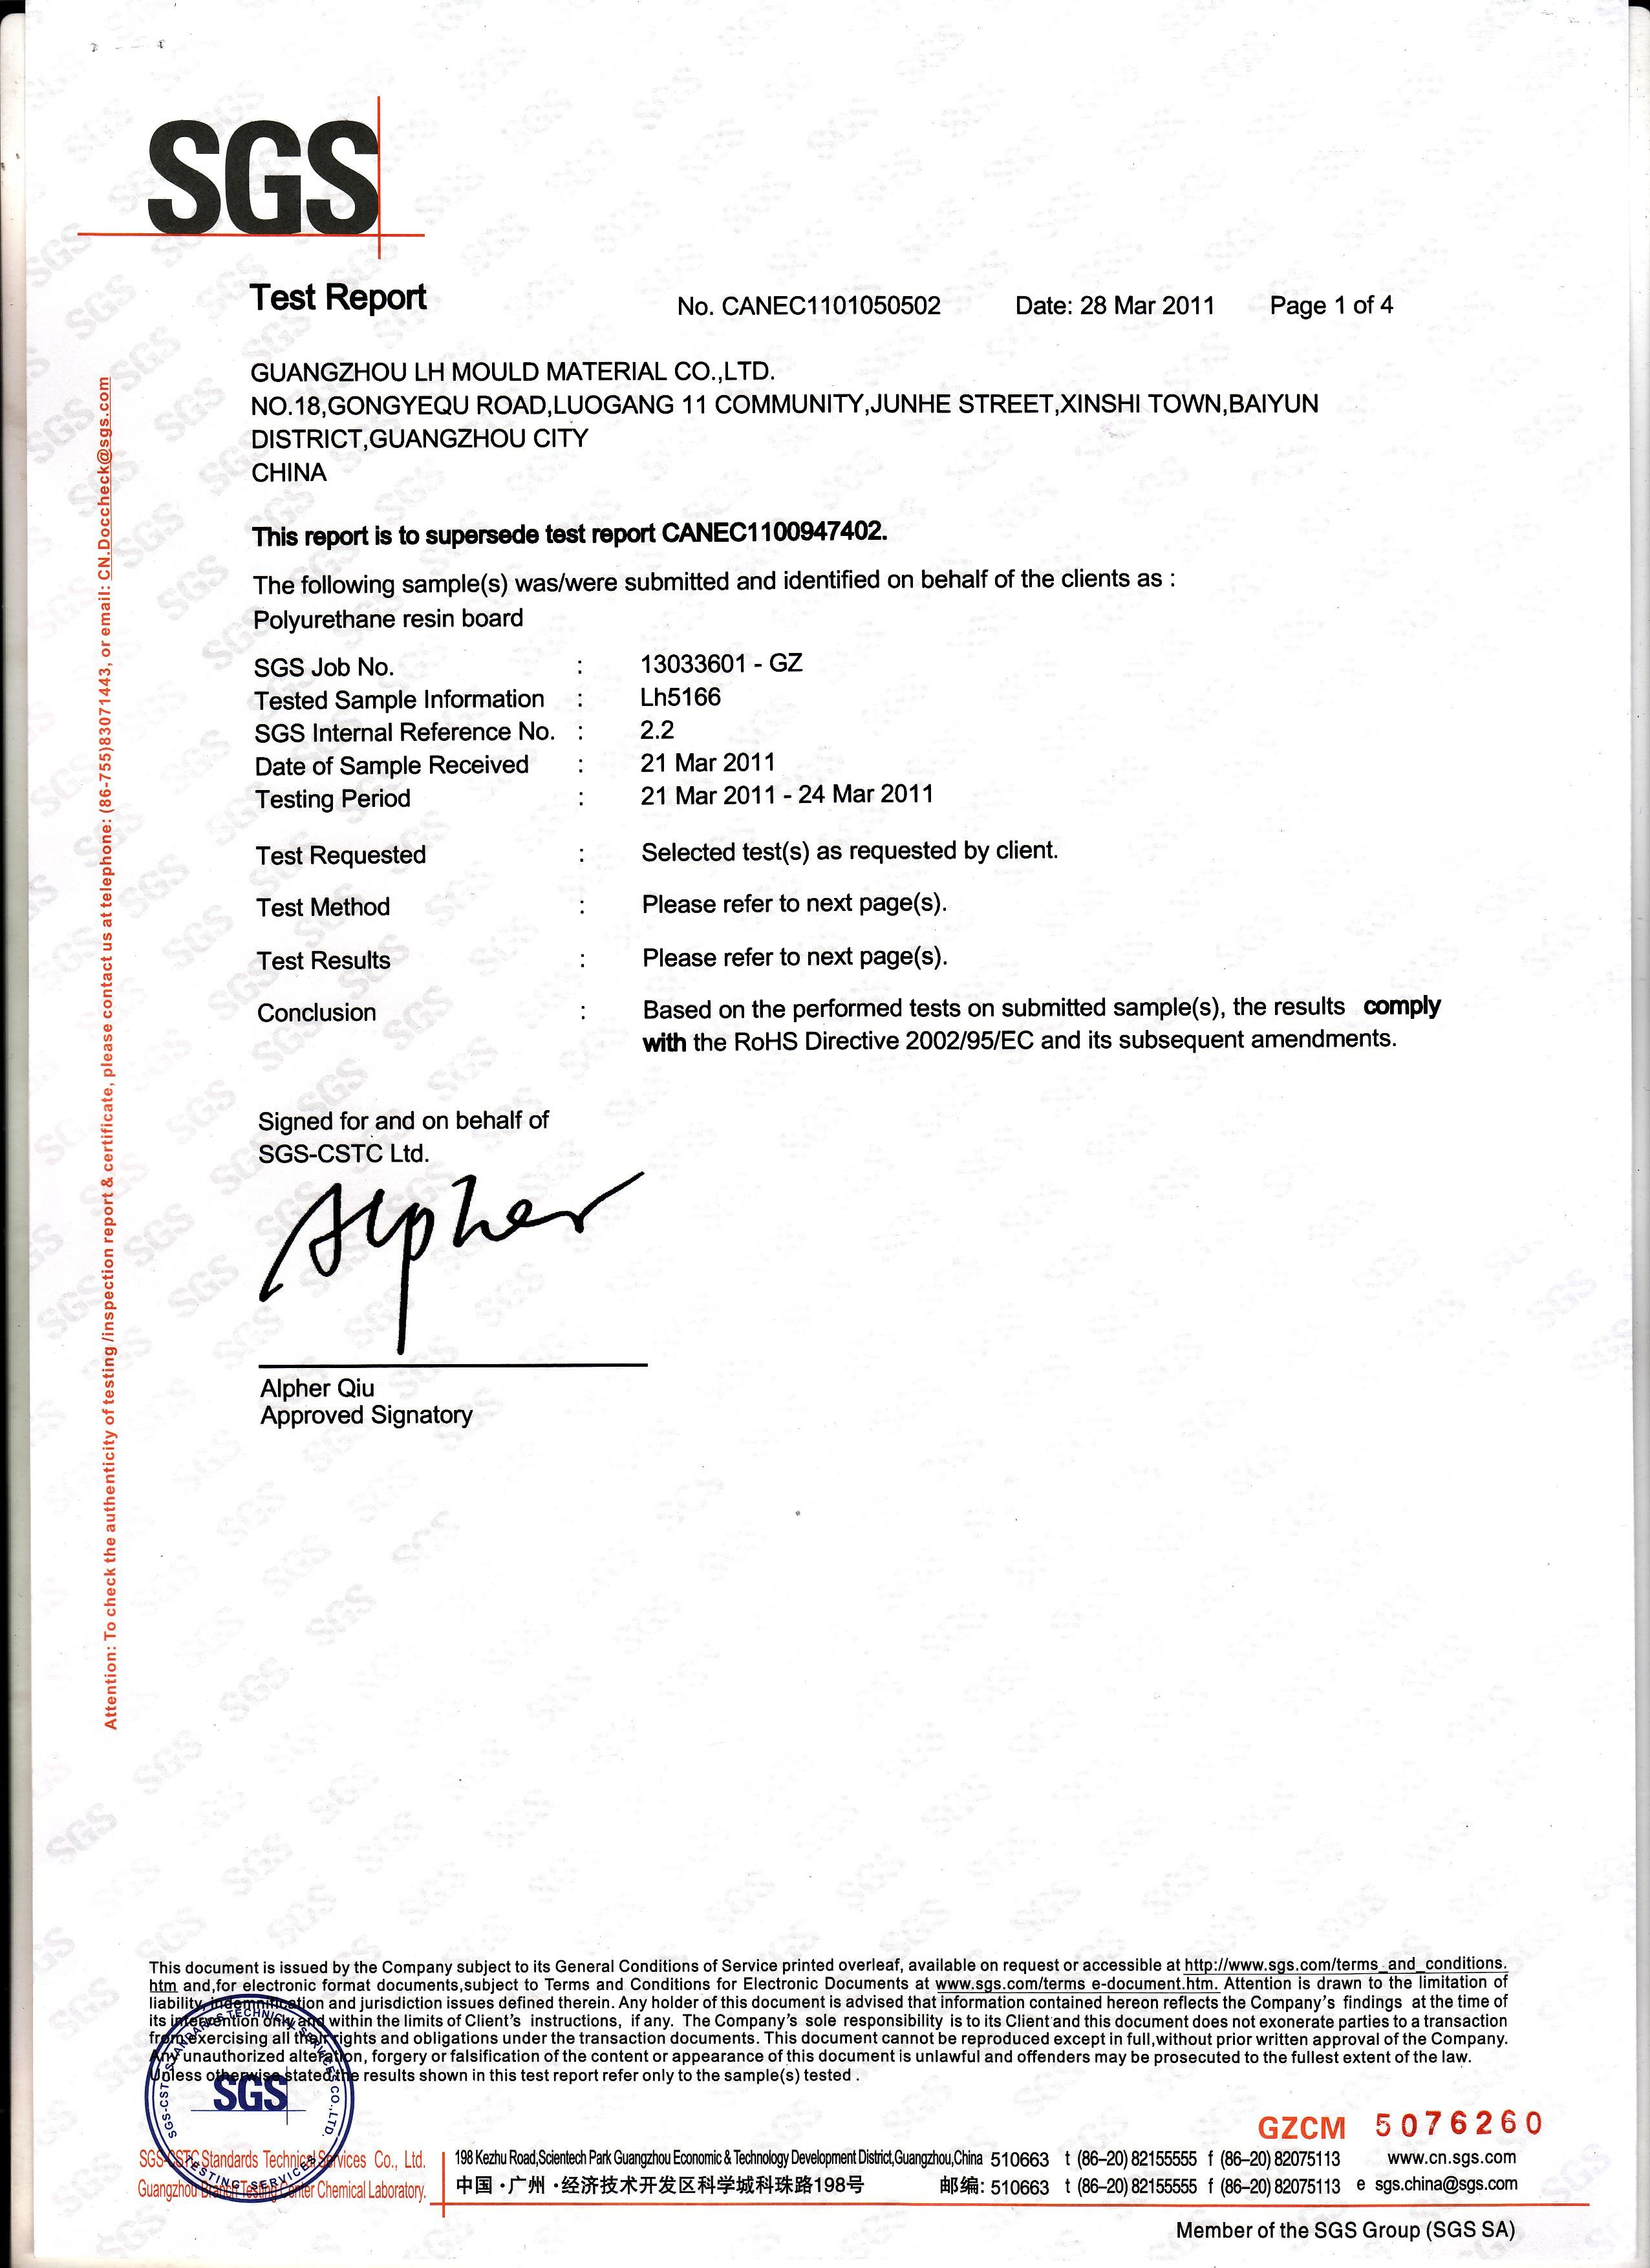 China Yongzhou Lihong New Material Co.，Ltd Certificaten